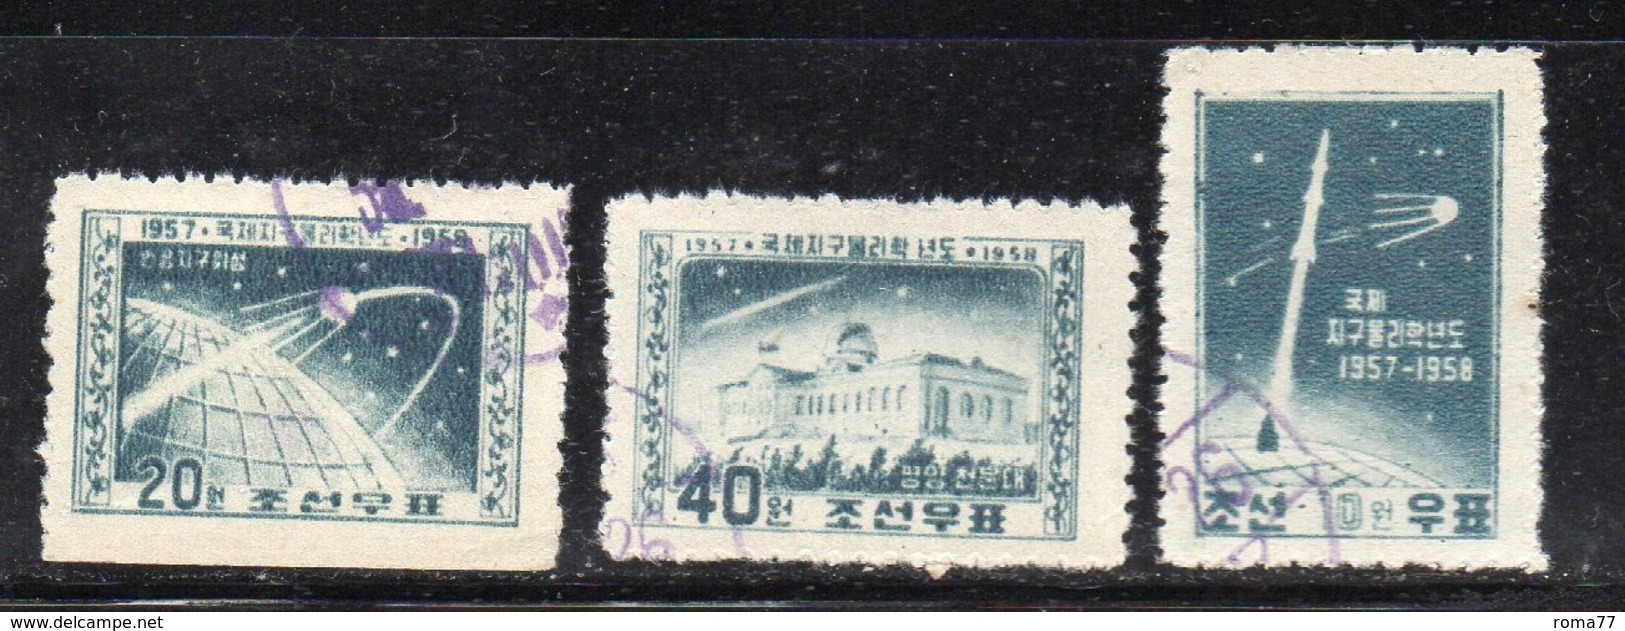 Y766 - COREA NORD 1958 , Tre Esemplari Usati  (2380A) .  SPAZIO - Corea Del Nord